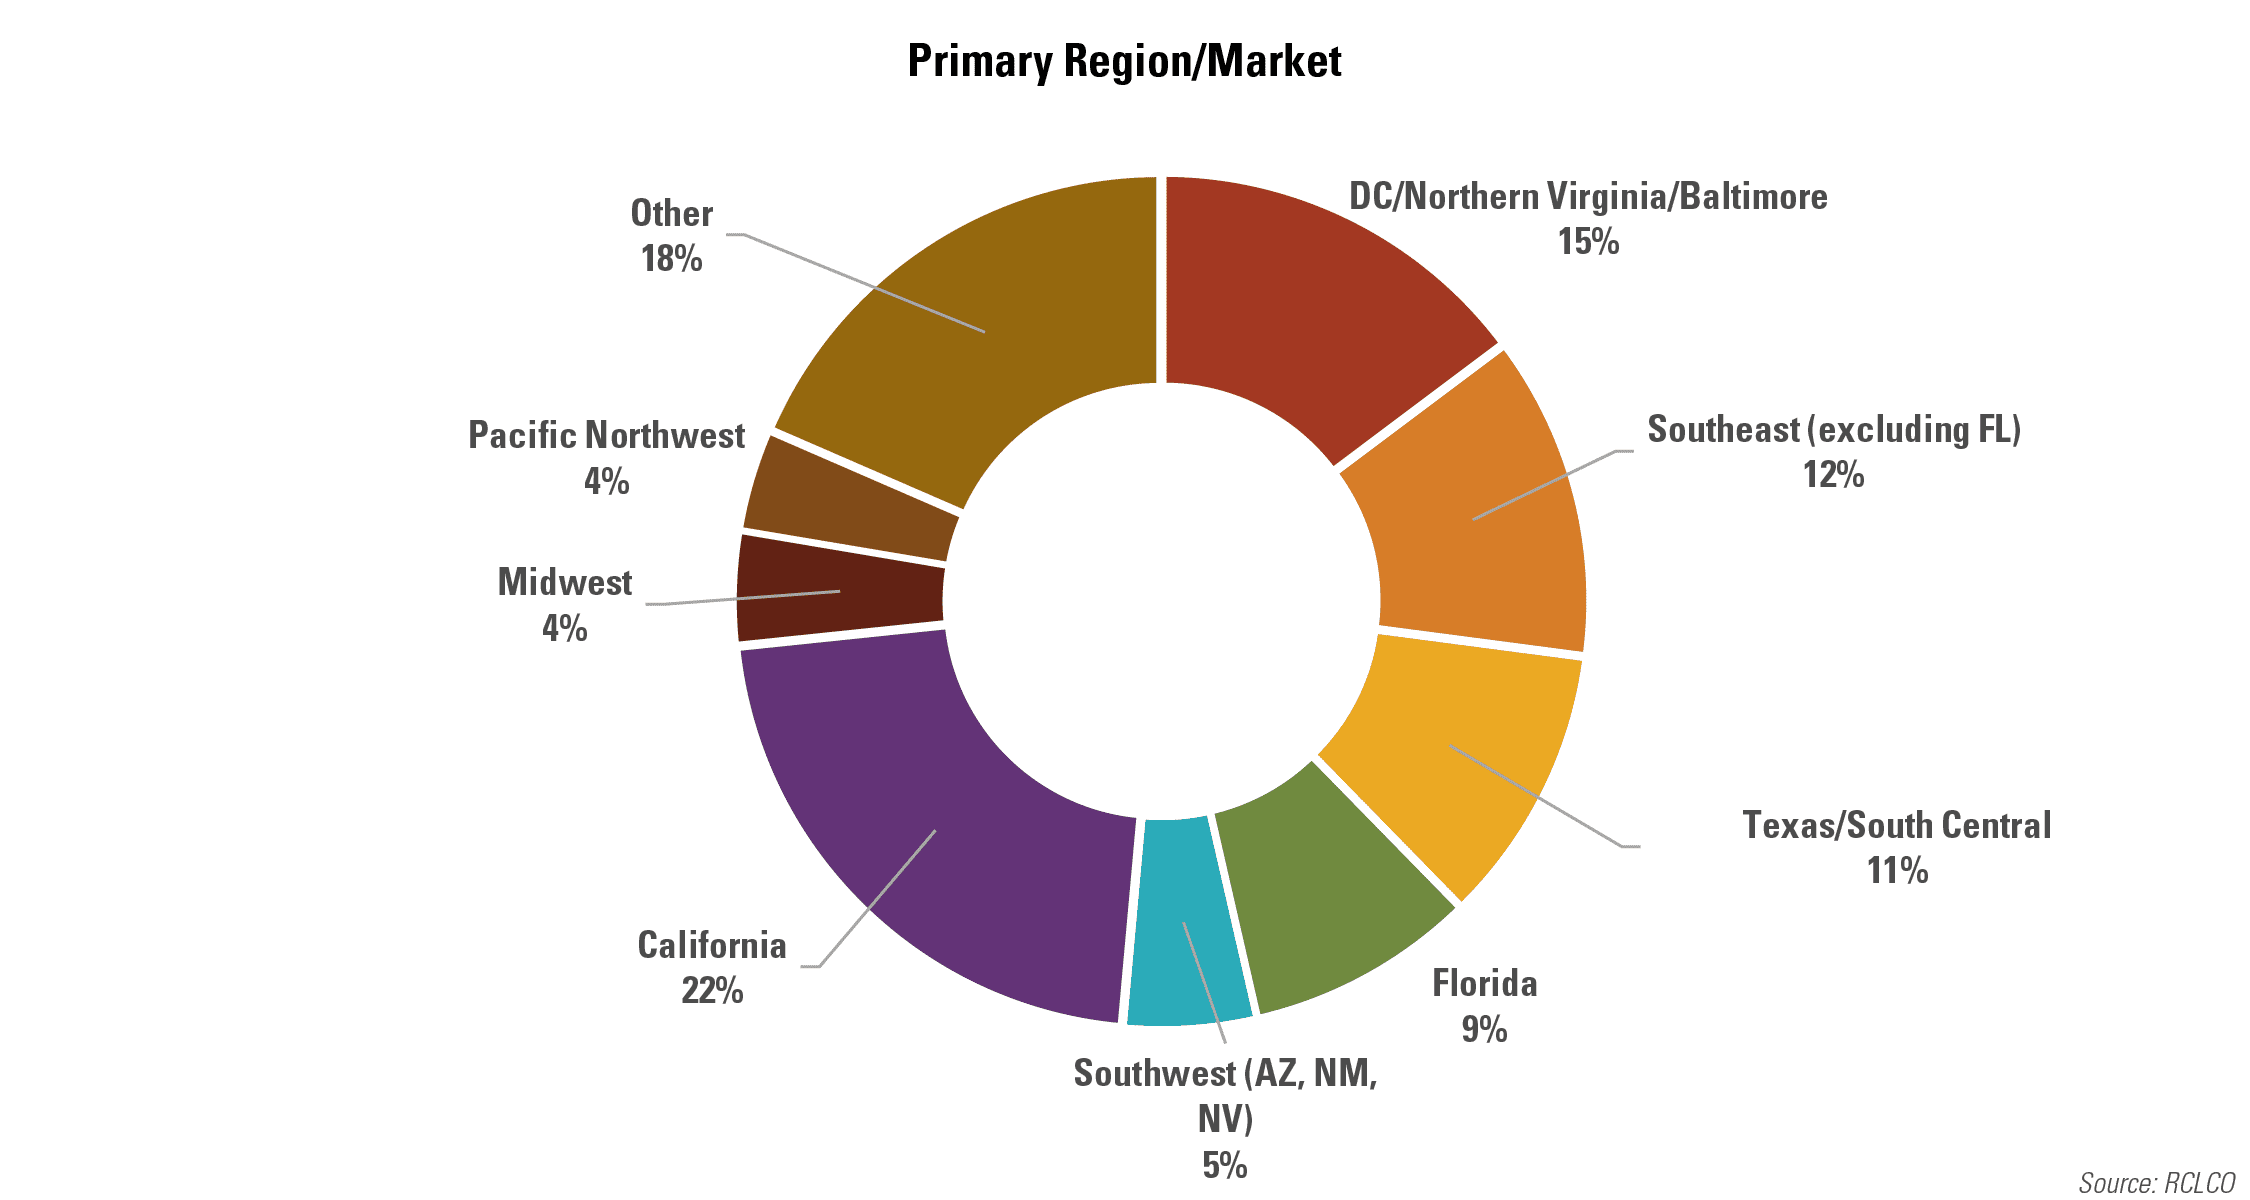 Primary Region/Market